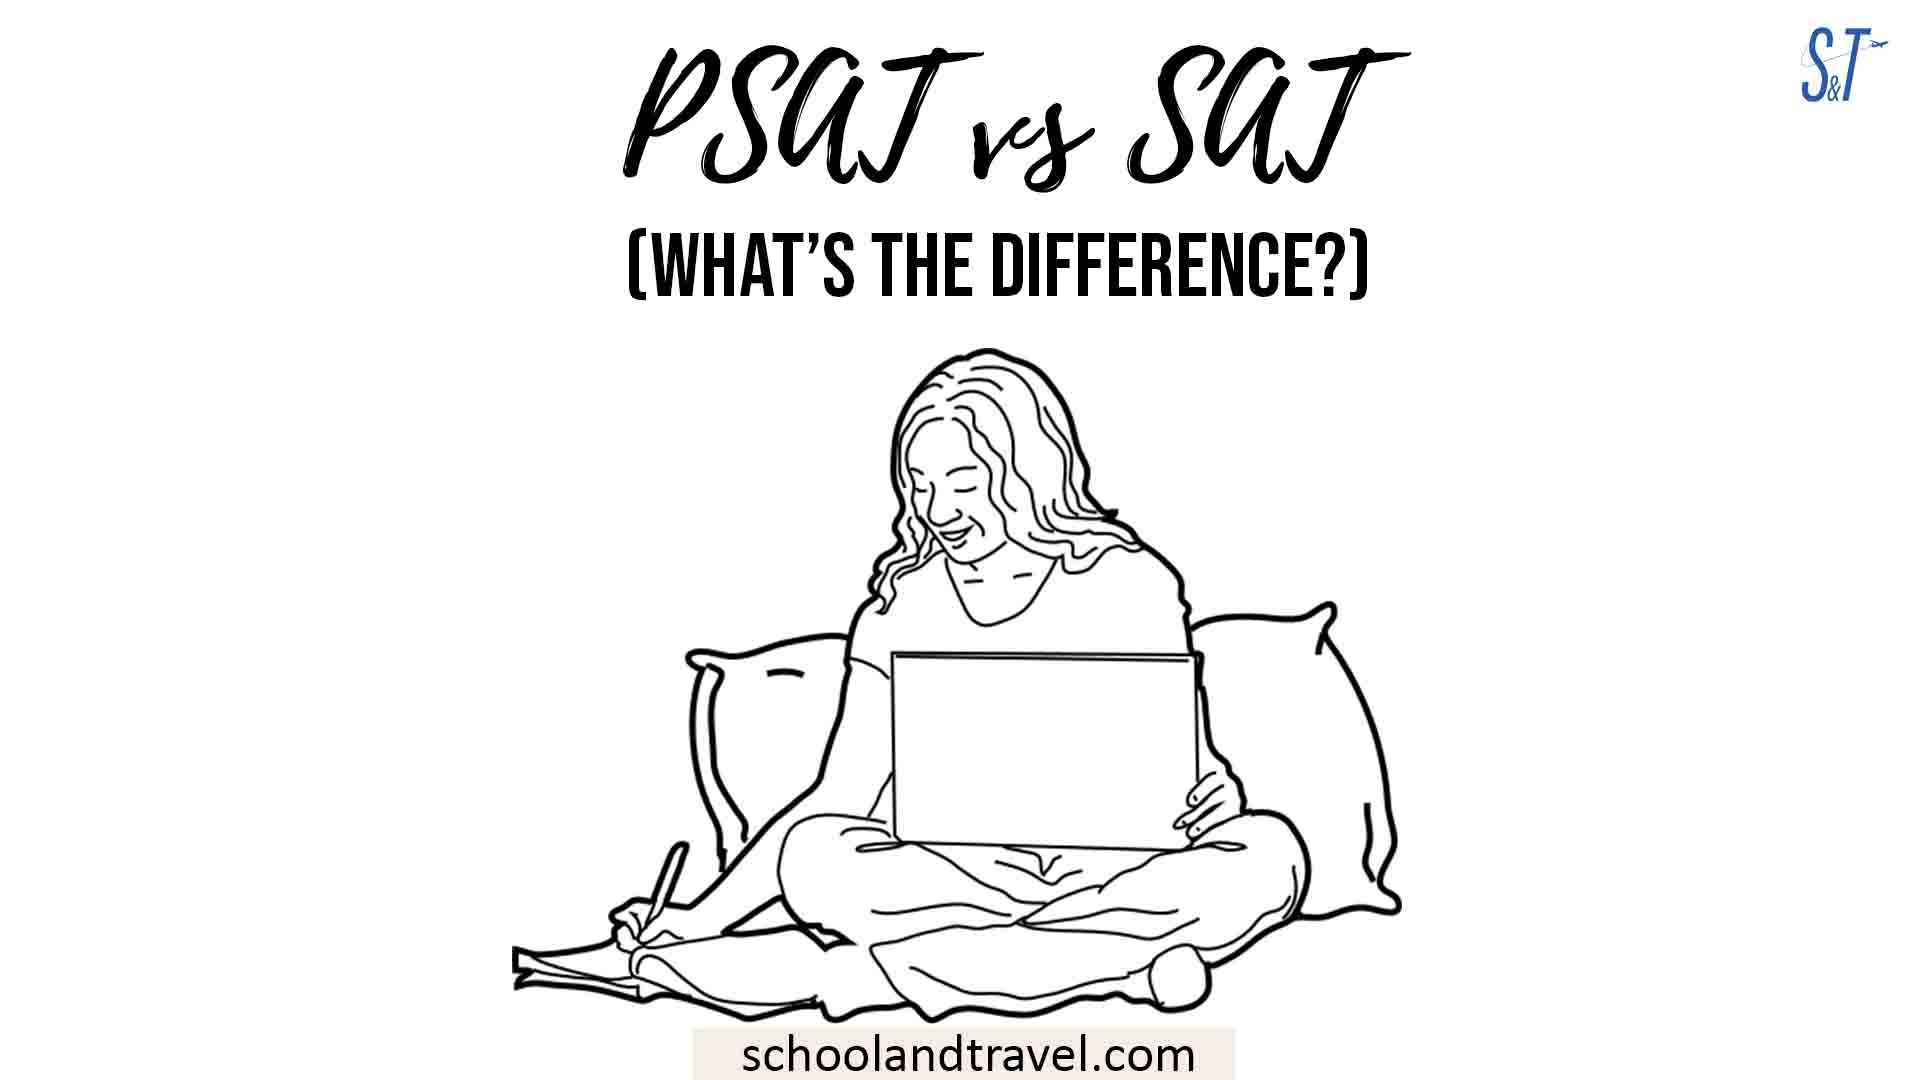 PSAT vs SAT